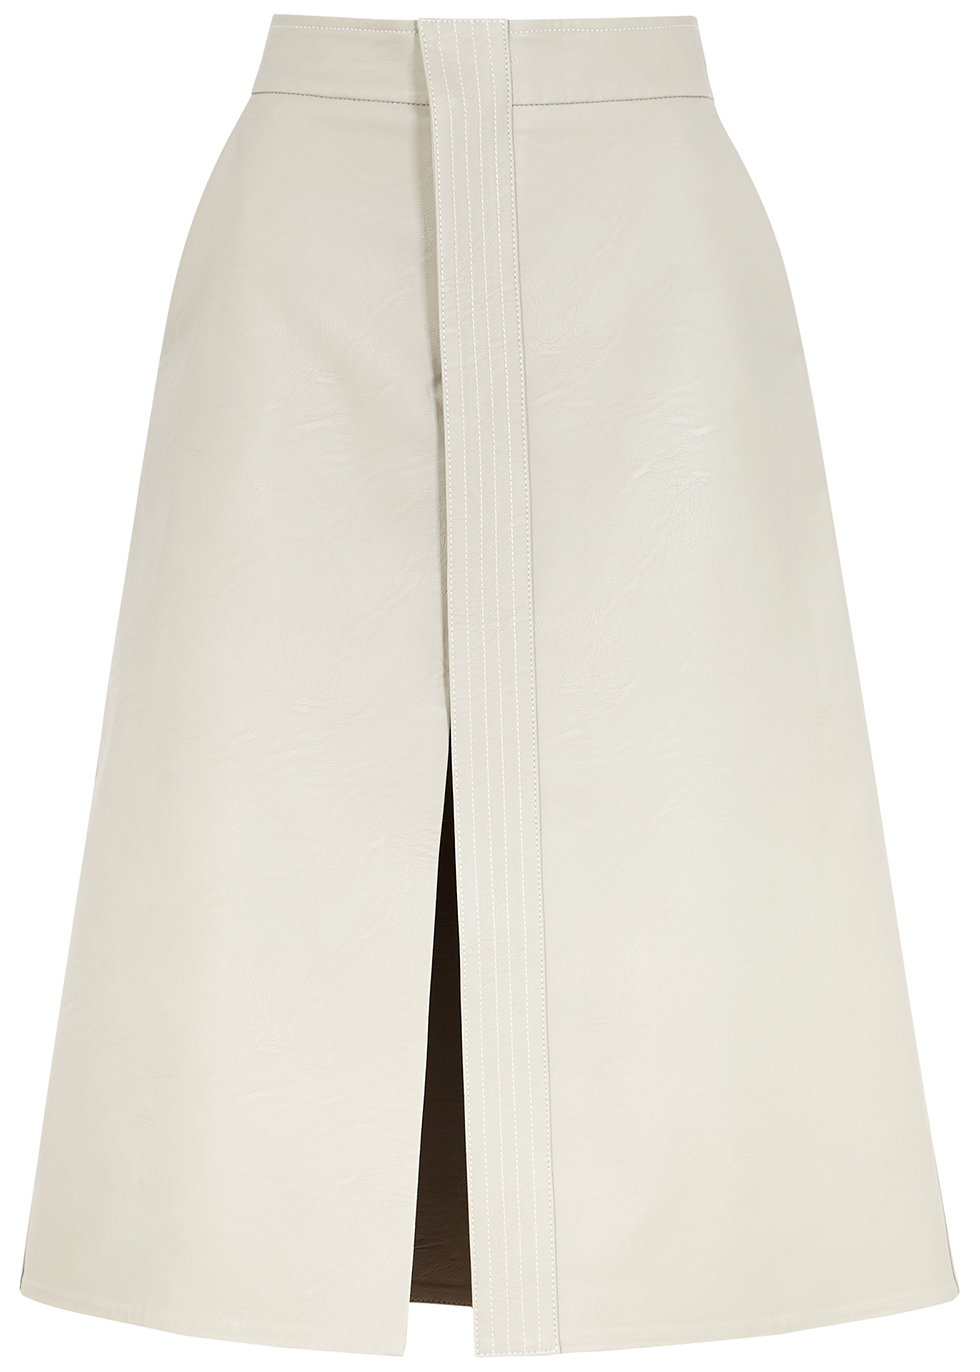 white faux leather midi skirt